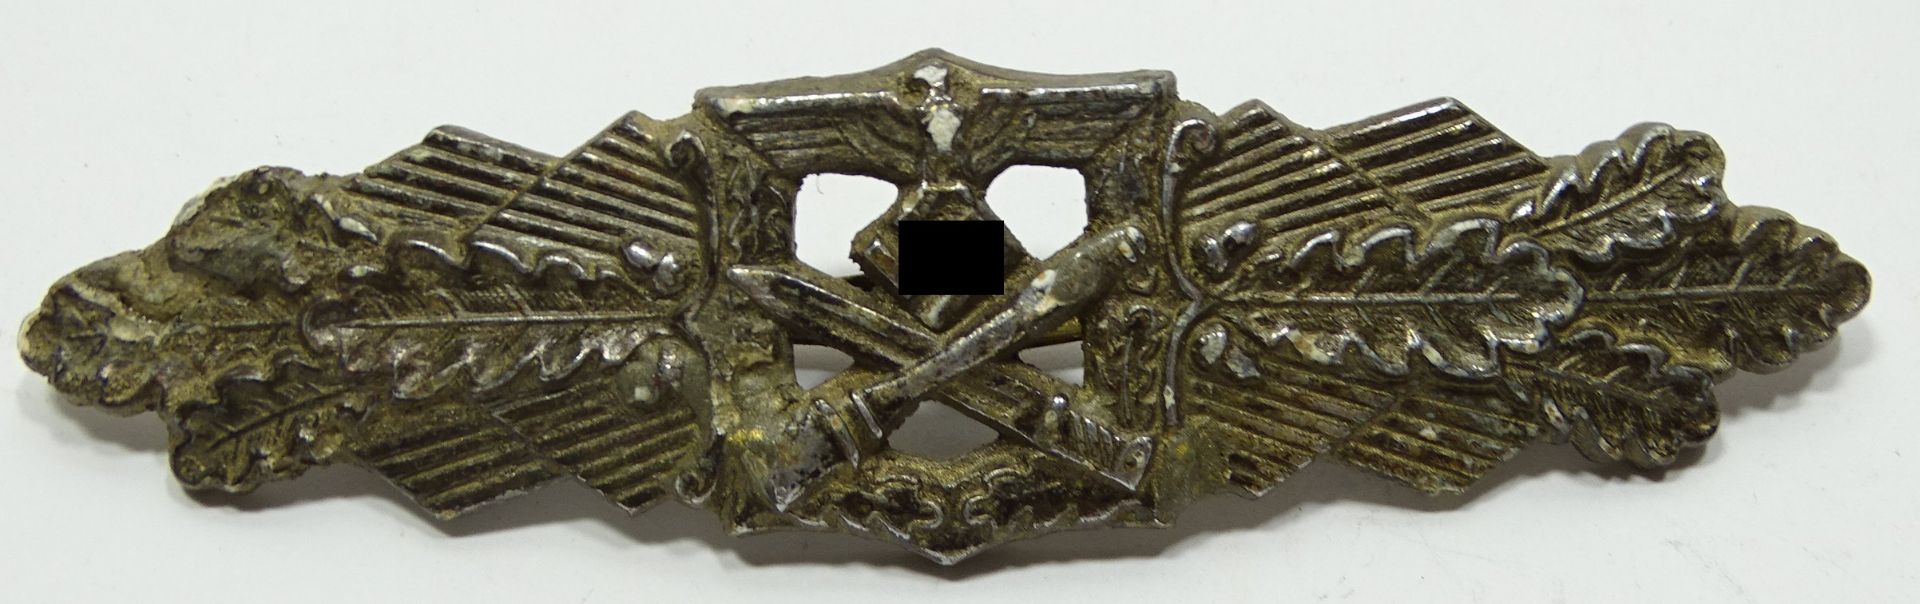 Nahkampfspange, 2. WK, in Bronze?, Rückseite mit Herstellernennung, Altersspuren und Abplatzer vorh